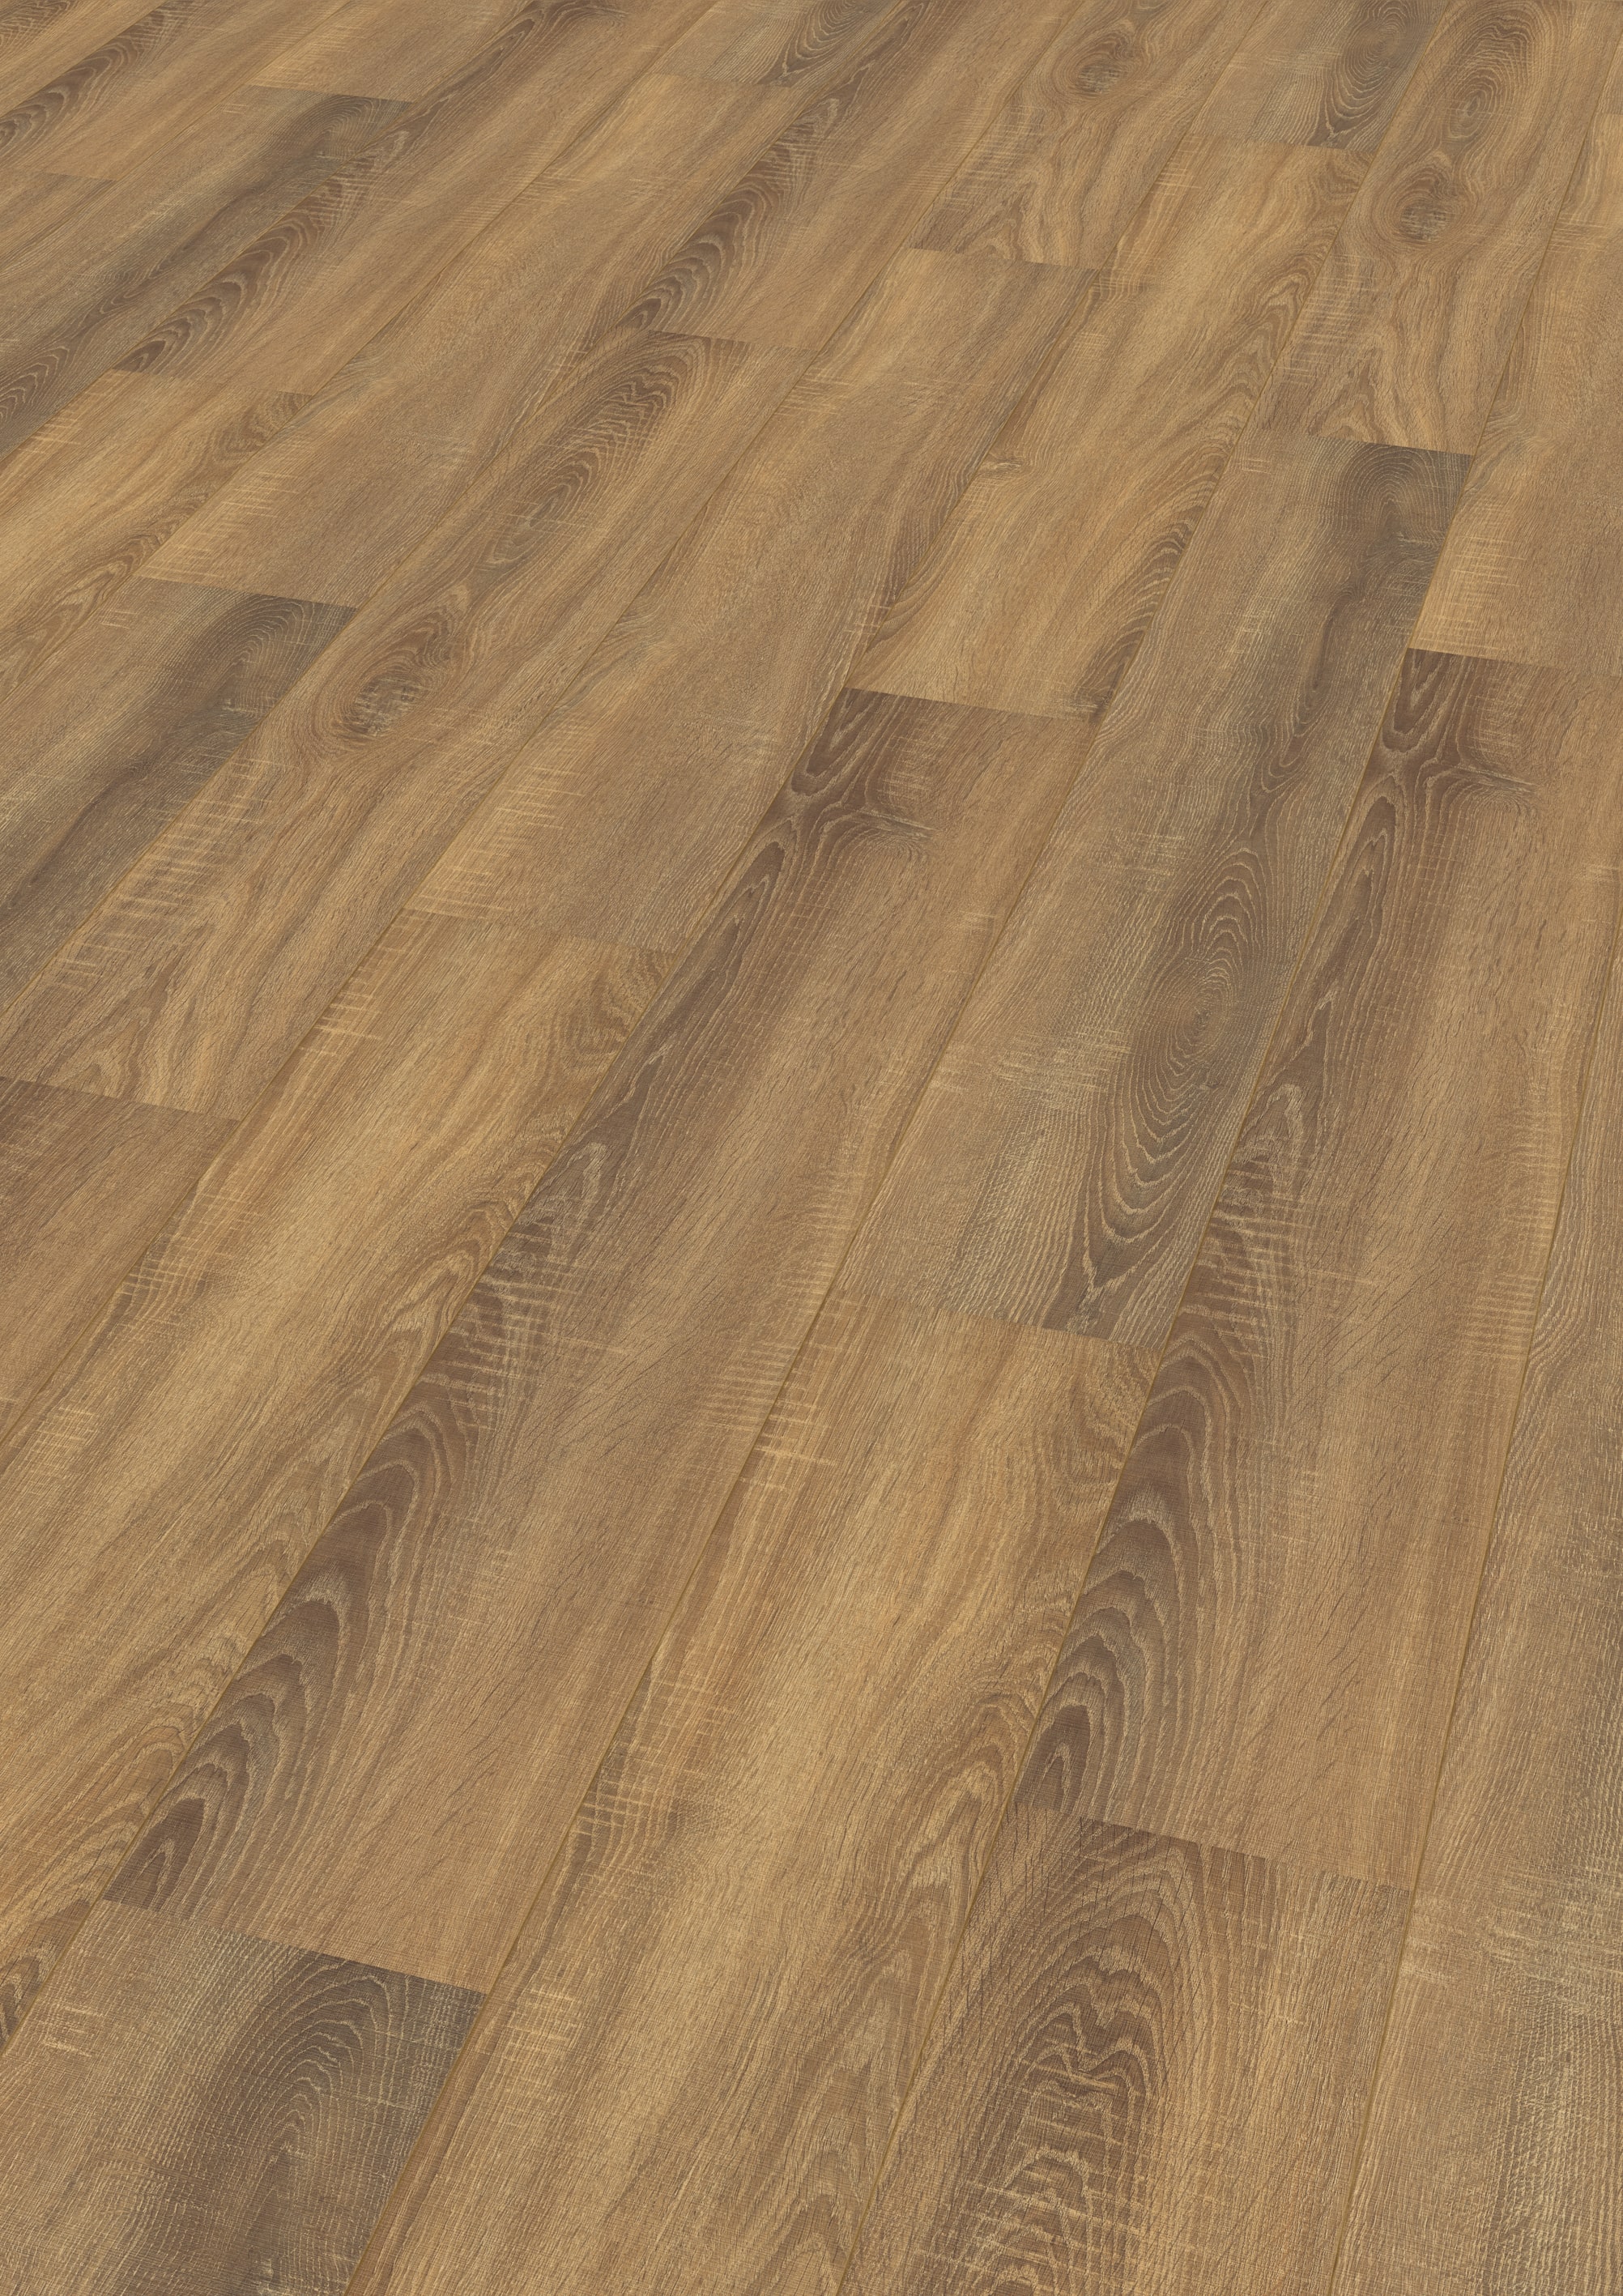 Laminátová podlaha Dub Virginia - řezaná struktura dřeva